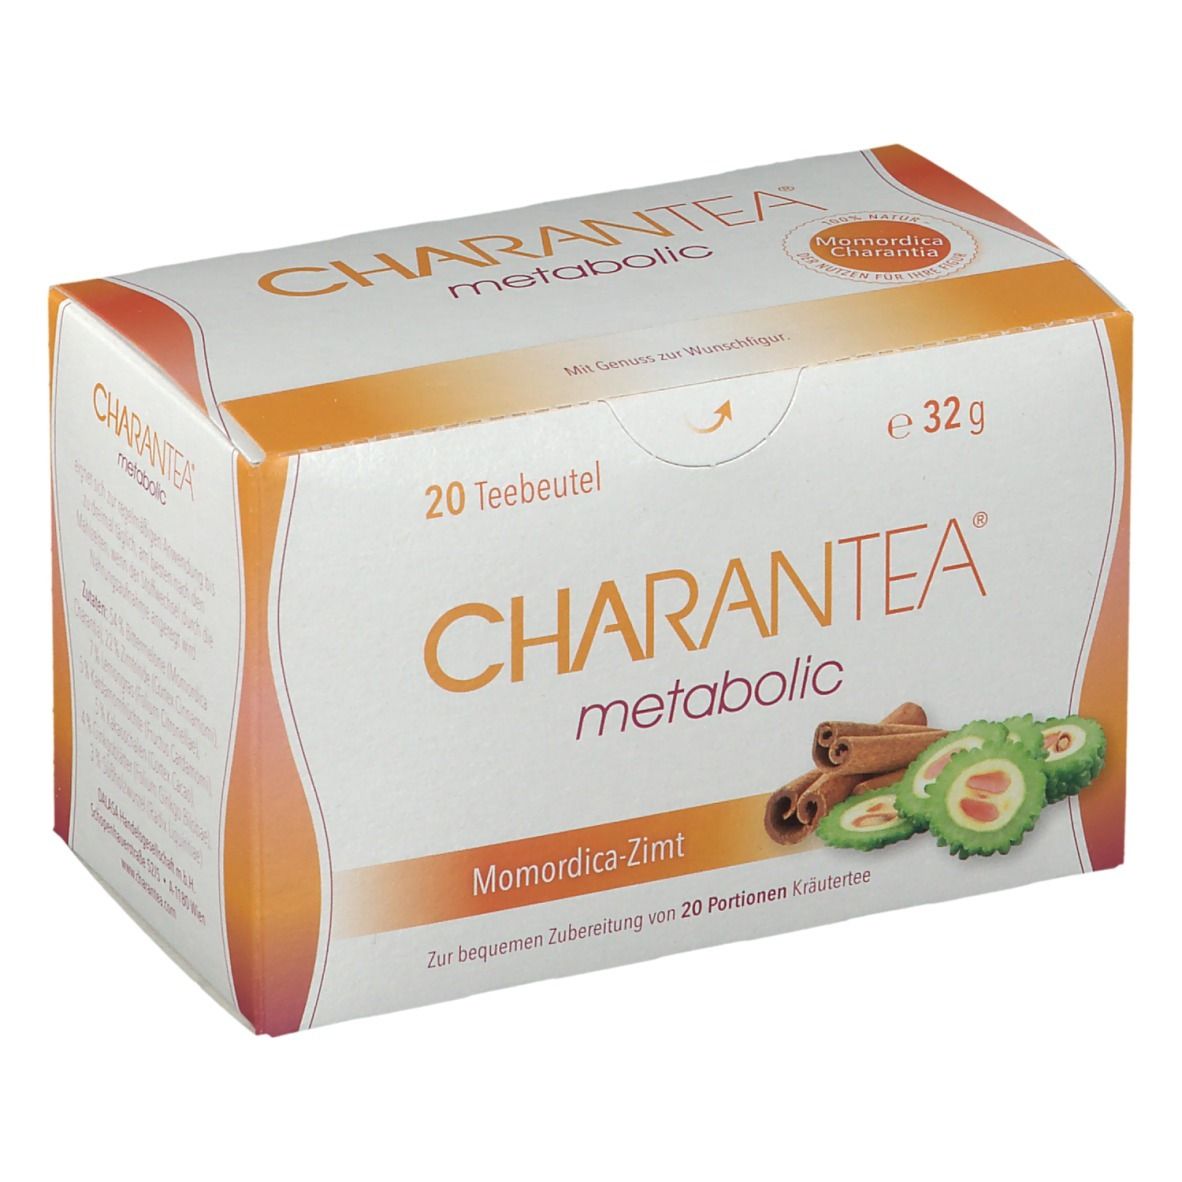 CHARANTEA® metabolic Momordica-Zimt